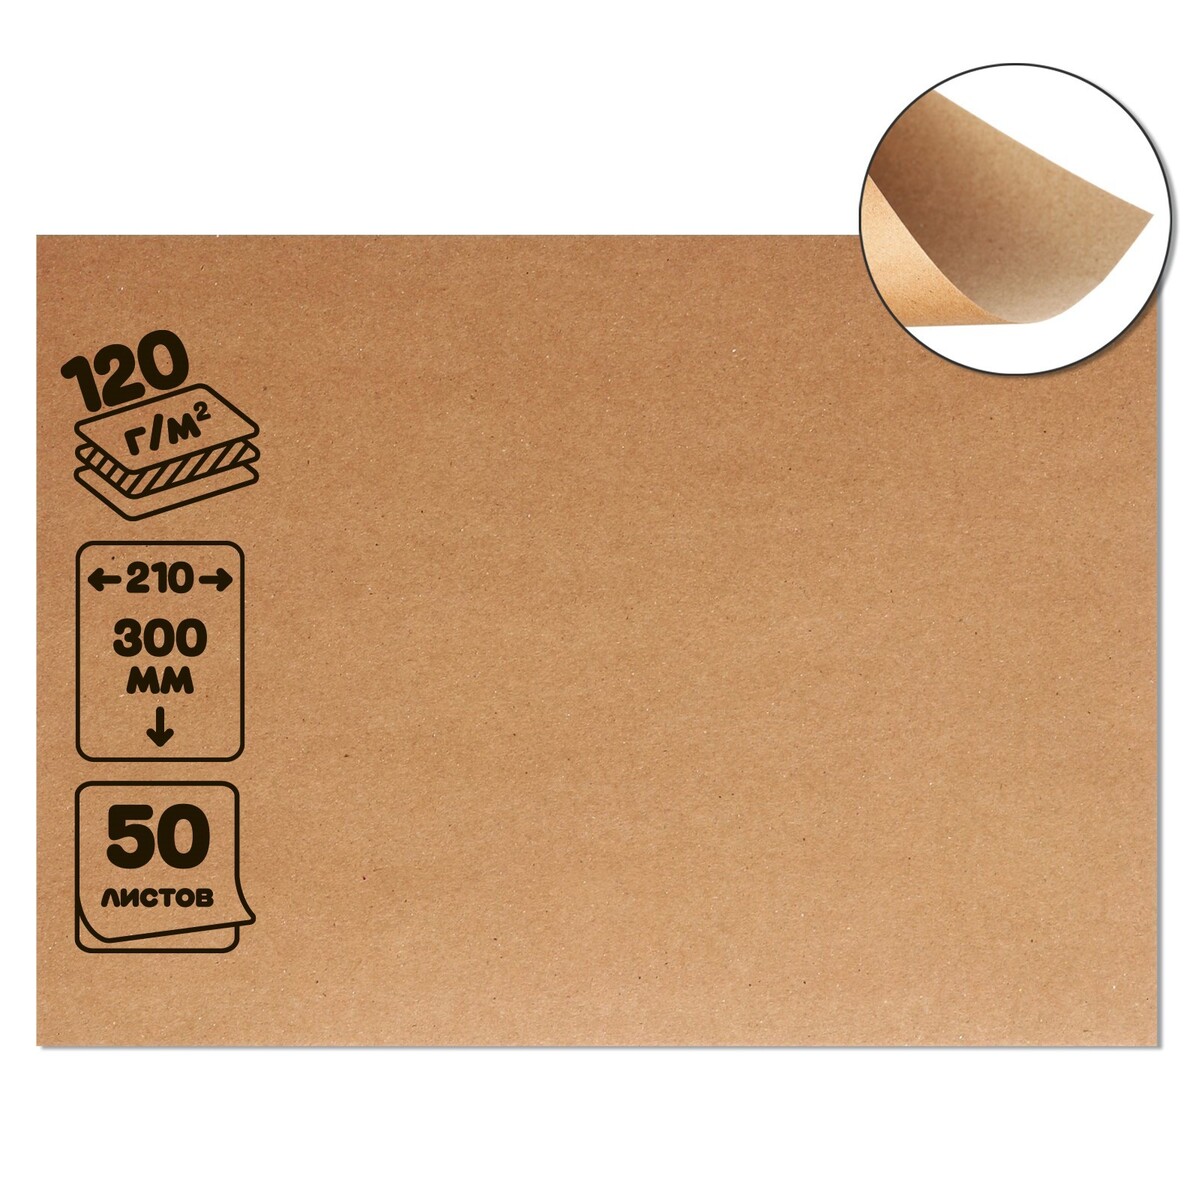 Крафт-бумага, 210 х 300 мм, 120 г/м2, набор 50 листов, коричневая/серая набор коробок 3 в 1 обратный конус крафт без крышек с ручкой 11 х 14 х 14 16 х 16 х 18 21 х 18 см